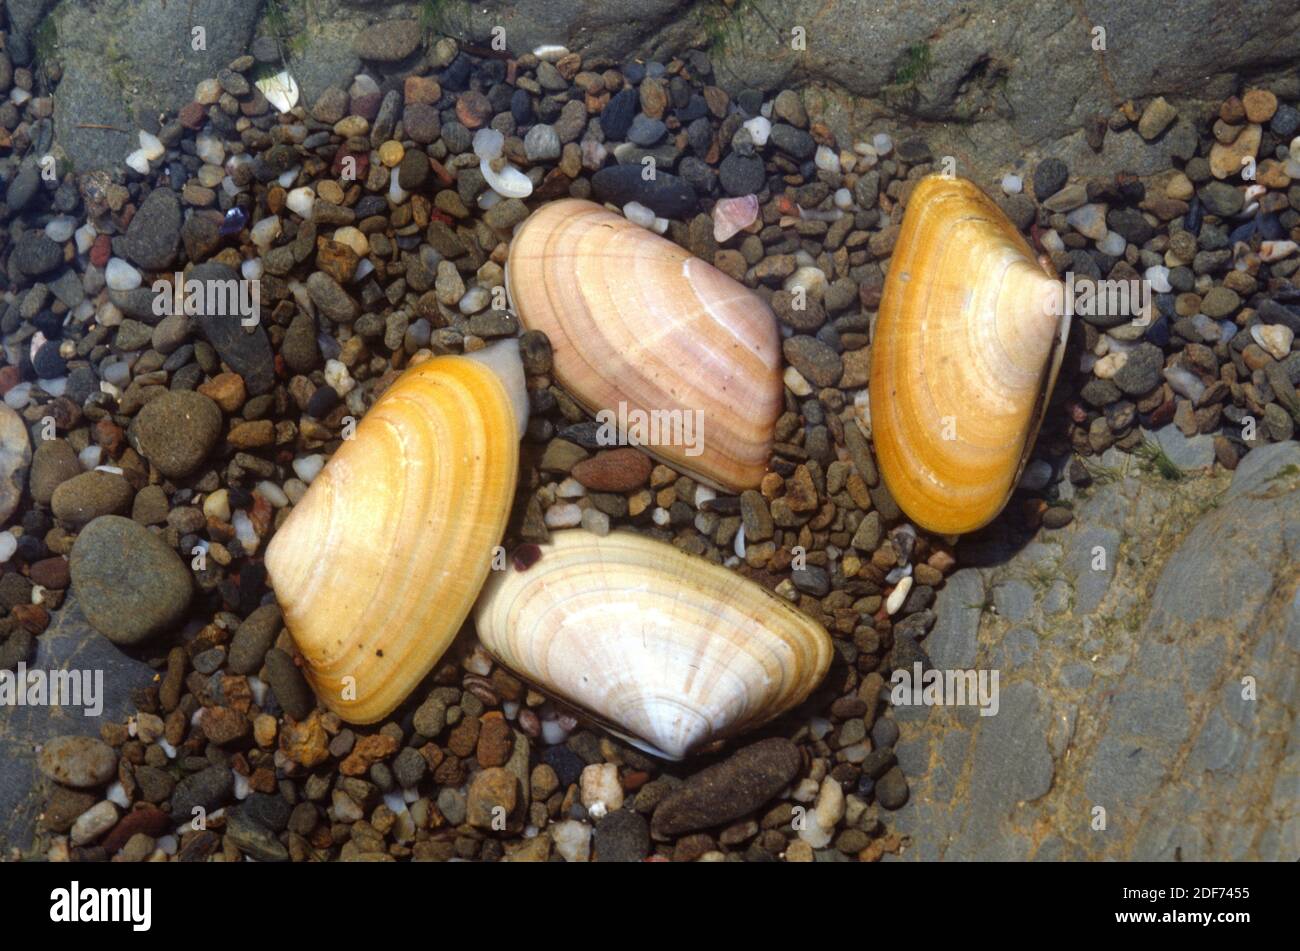 El almeja de cuña (Donax trunculus) es un molusco bivalvo comestible. Foto de stock